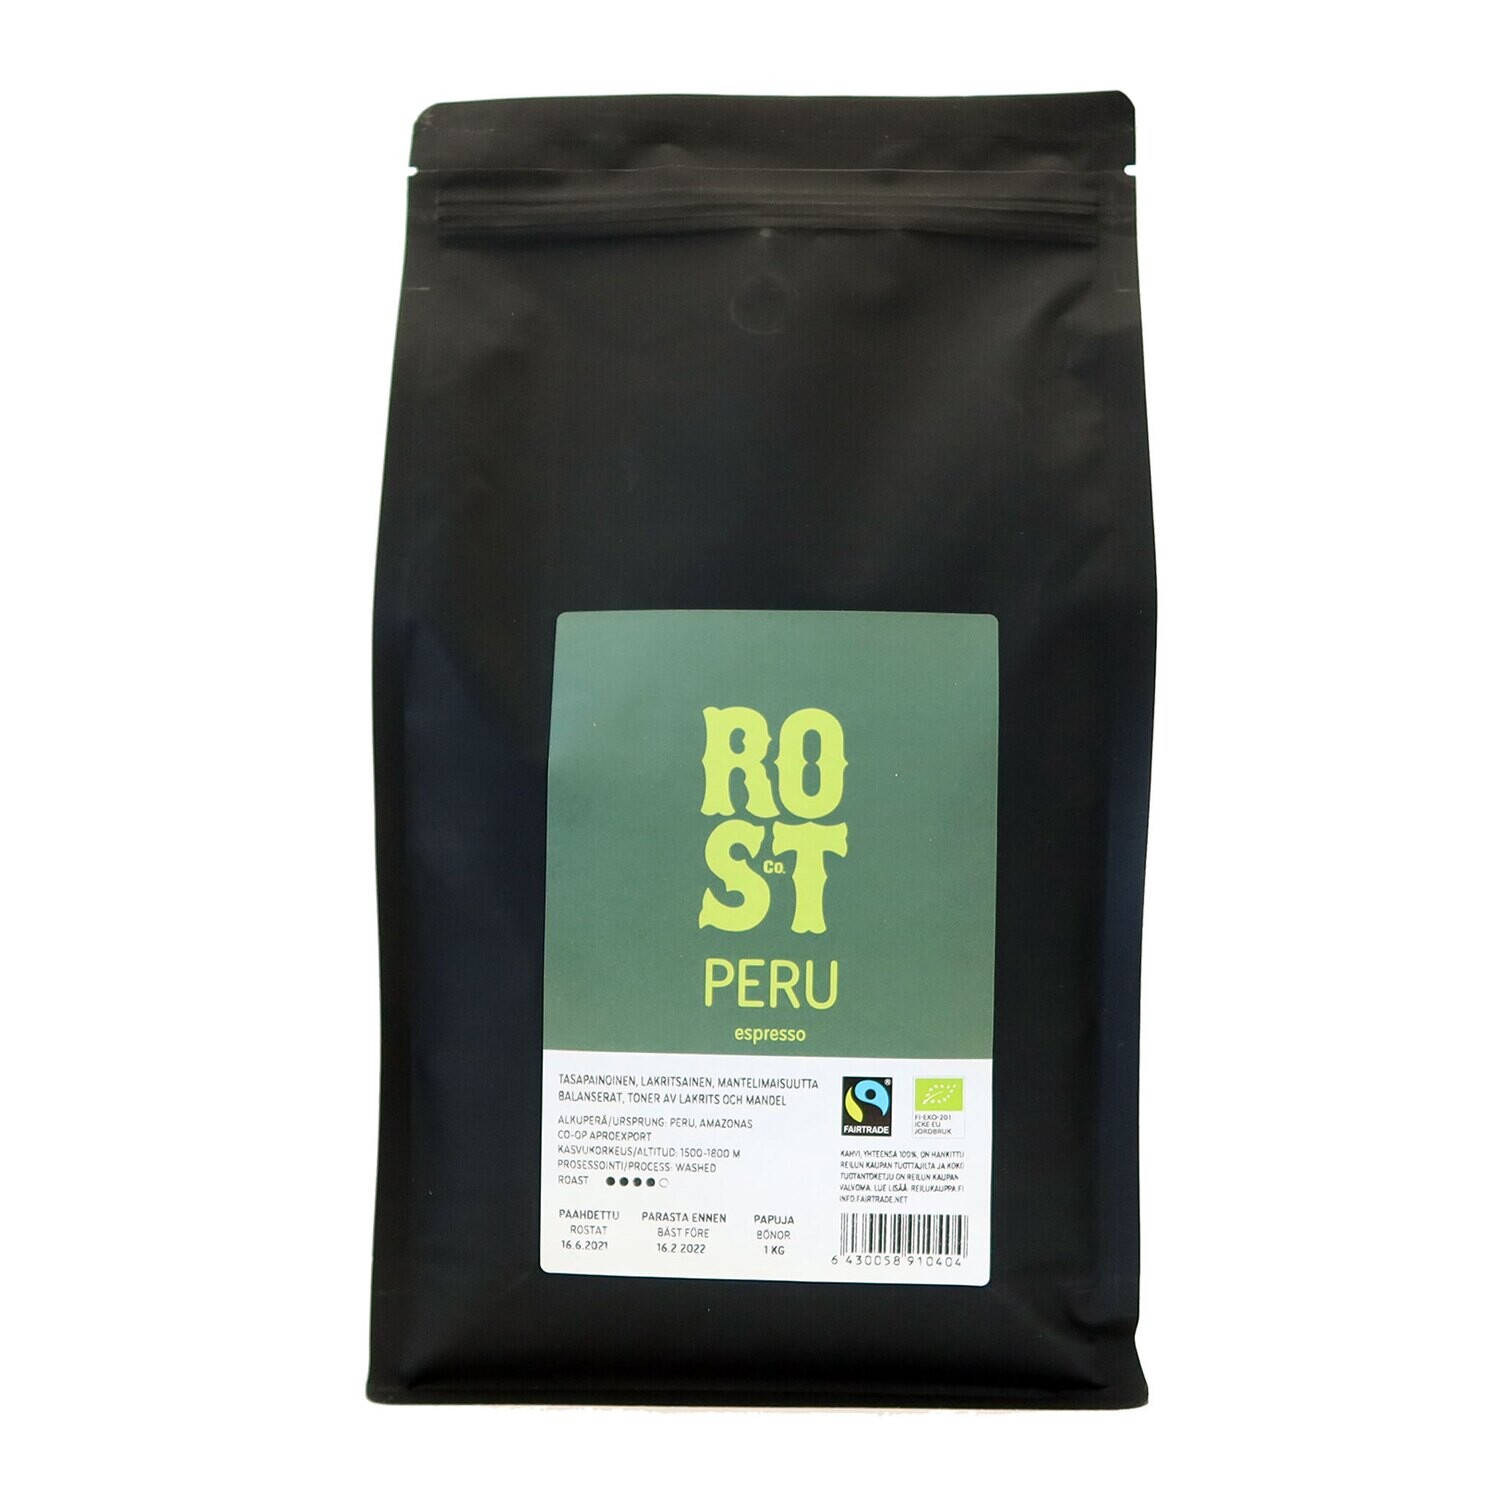 ROST & Co. Peru Espresso 1 Kg